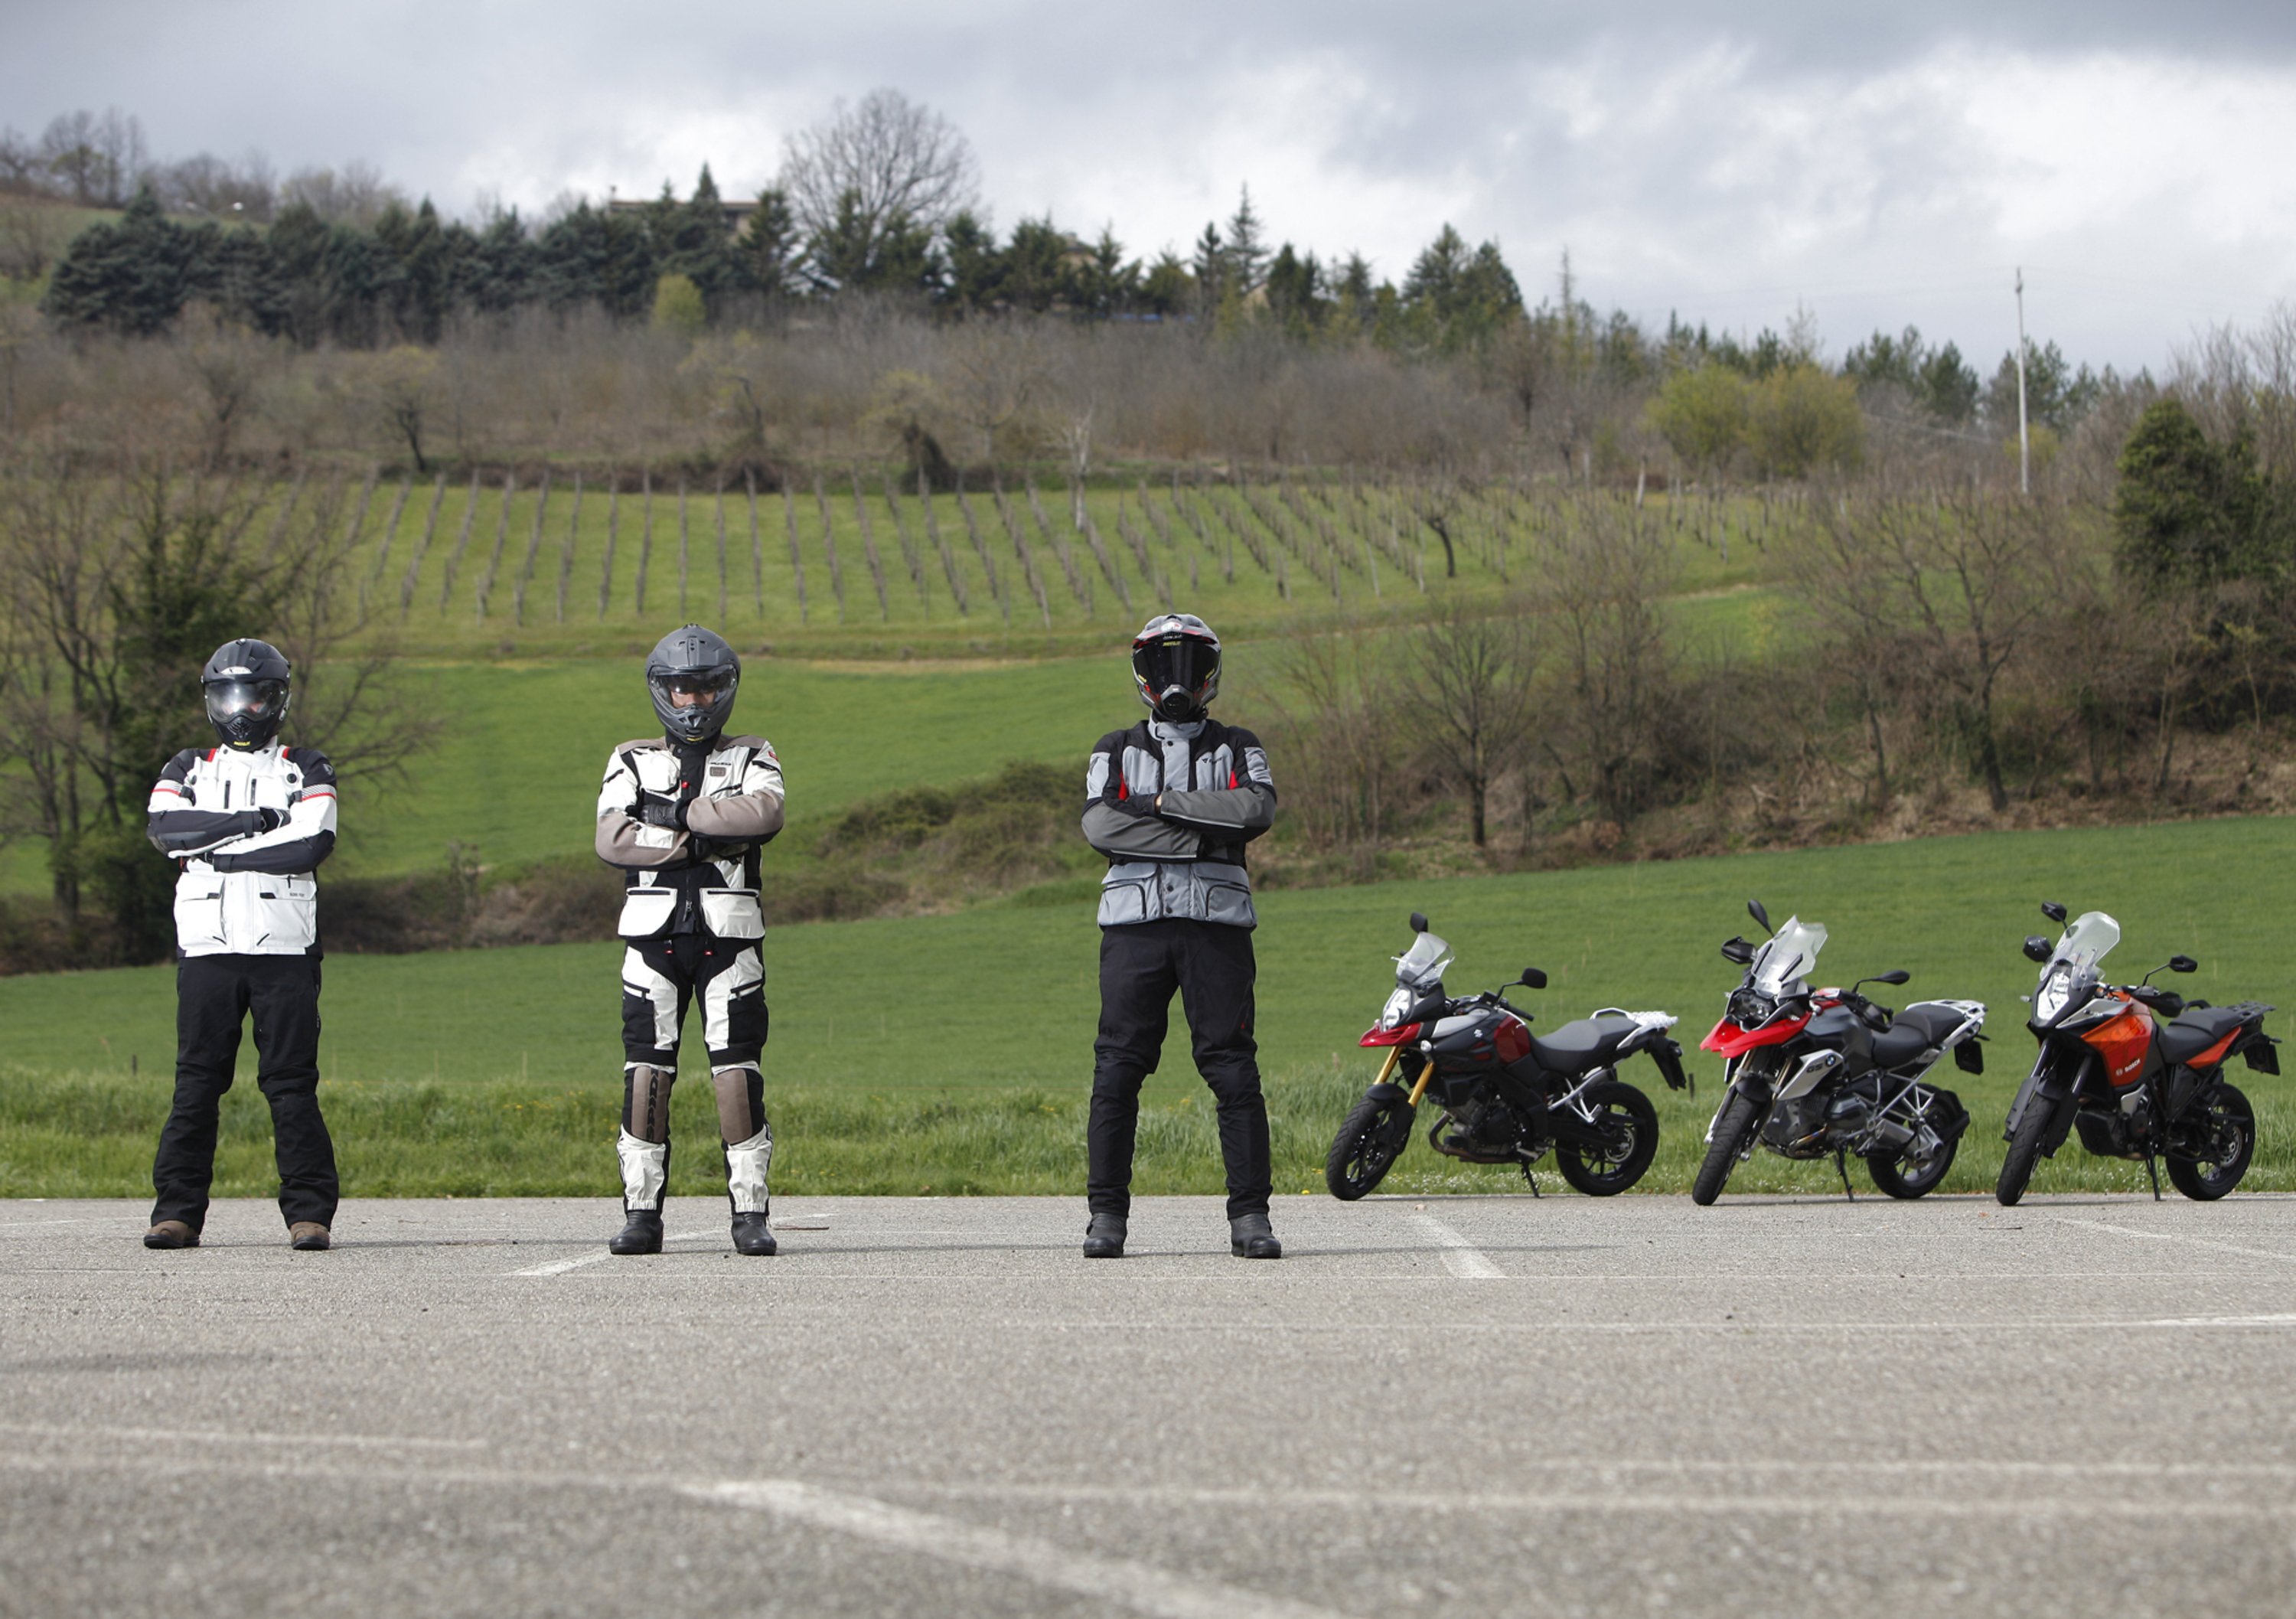 Le prove su strada e in pista di Moto.it: le pi&ugrave; lette e commentate del 2014